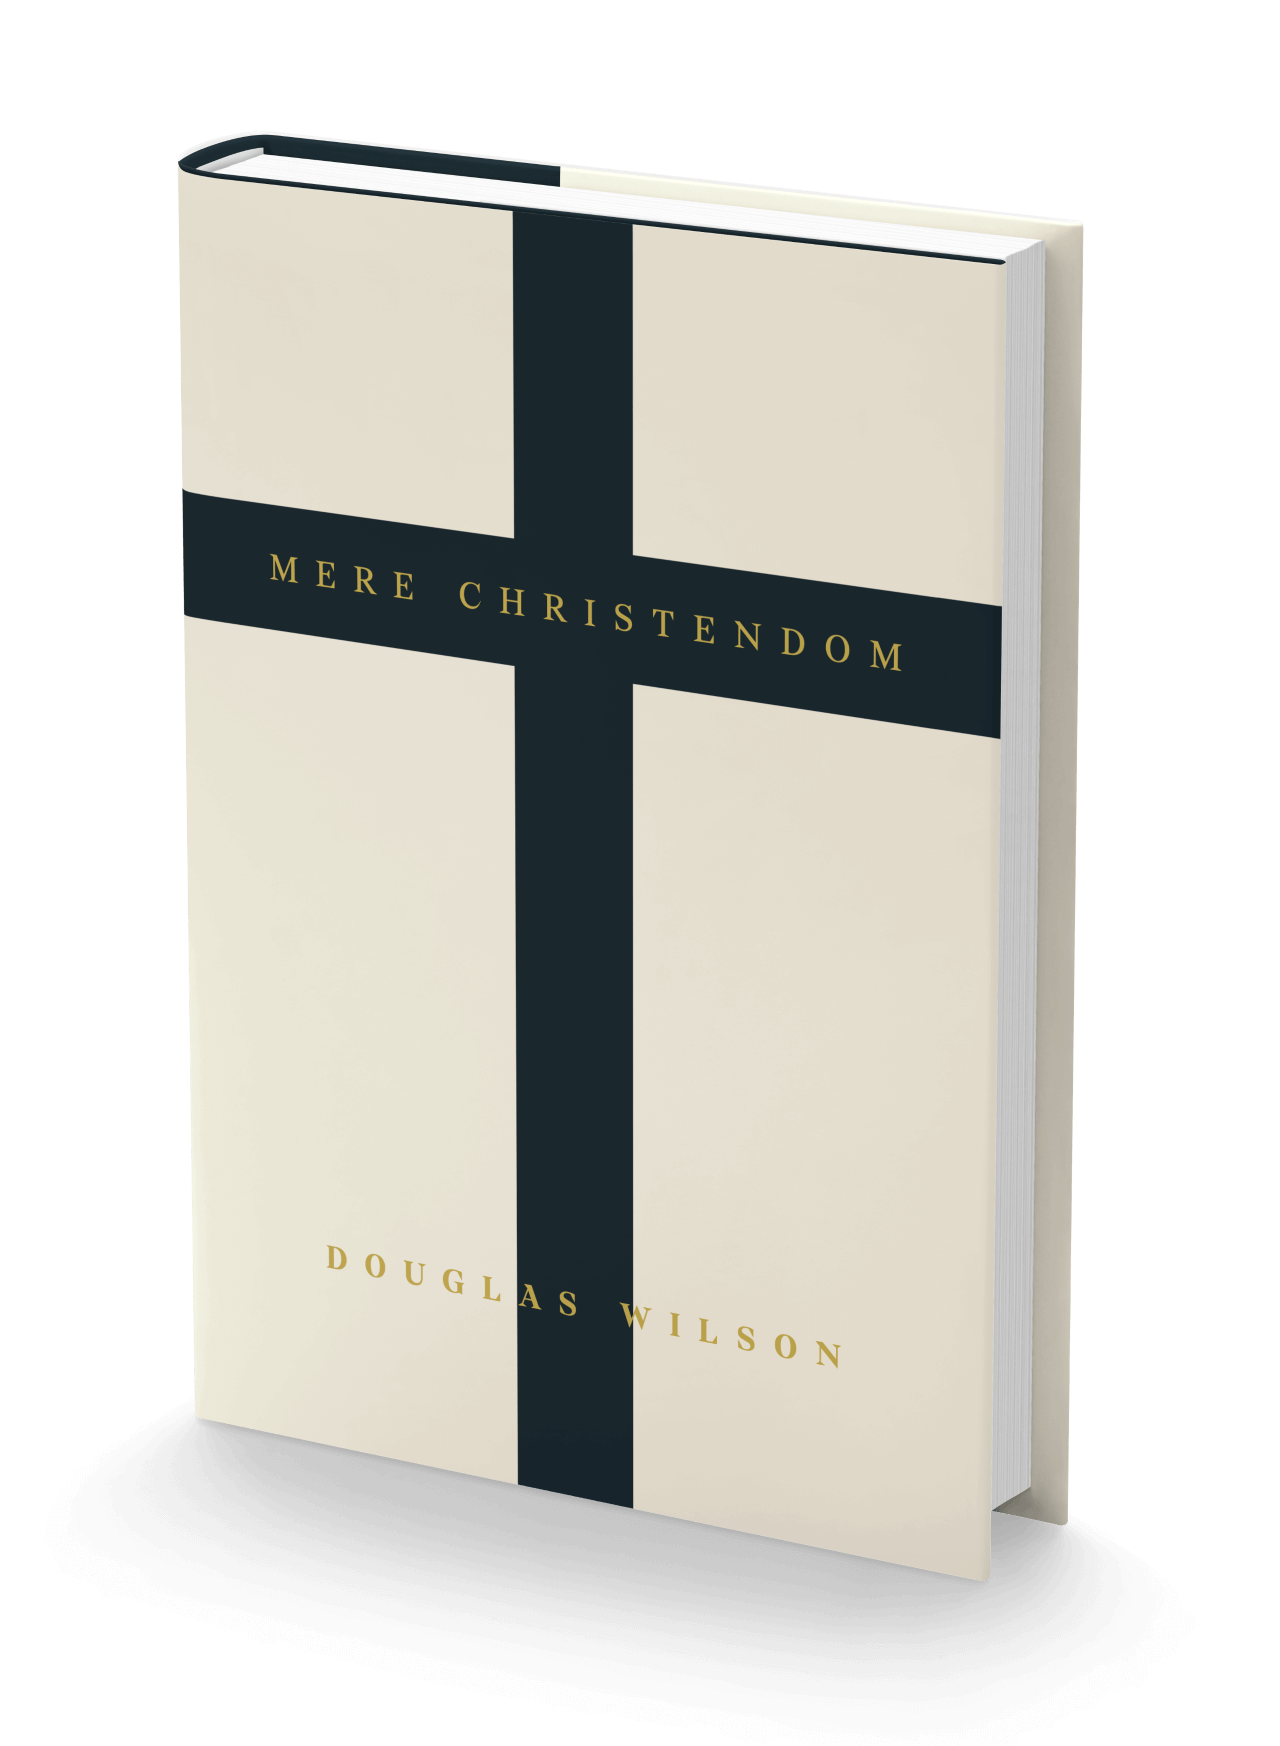 Mere Christendom by Douglas Wilson